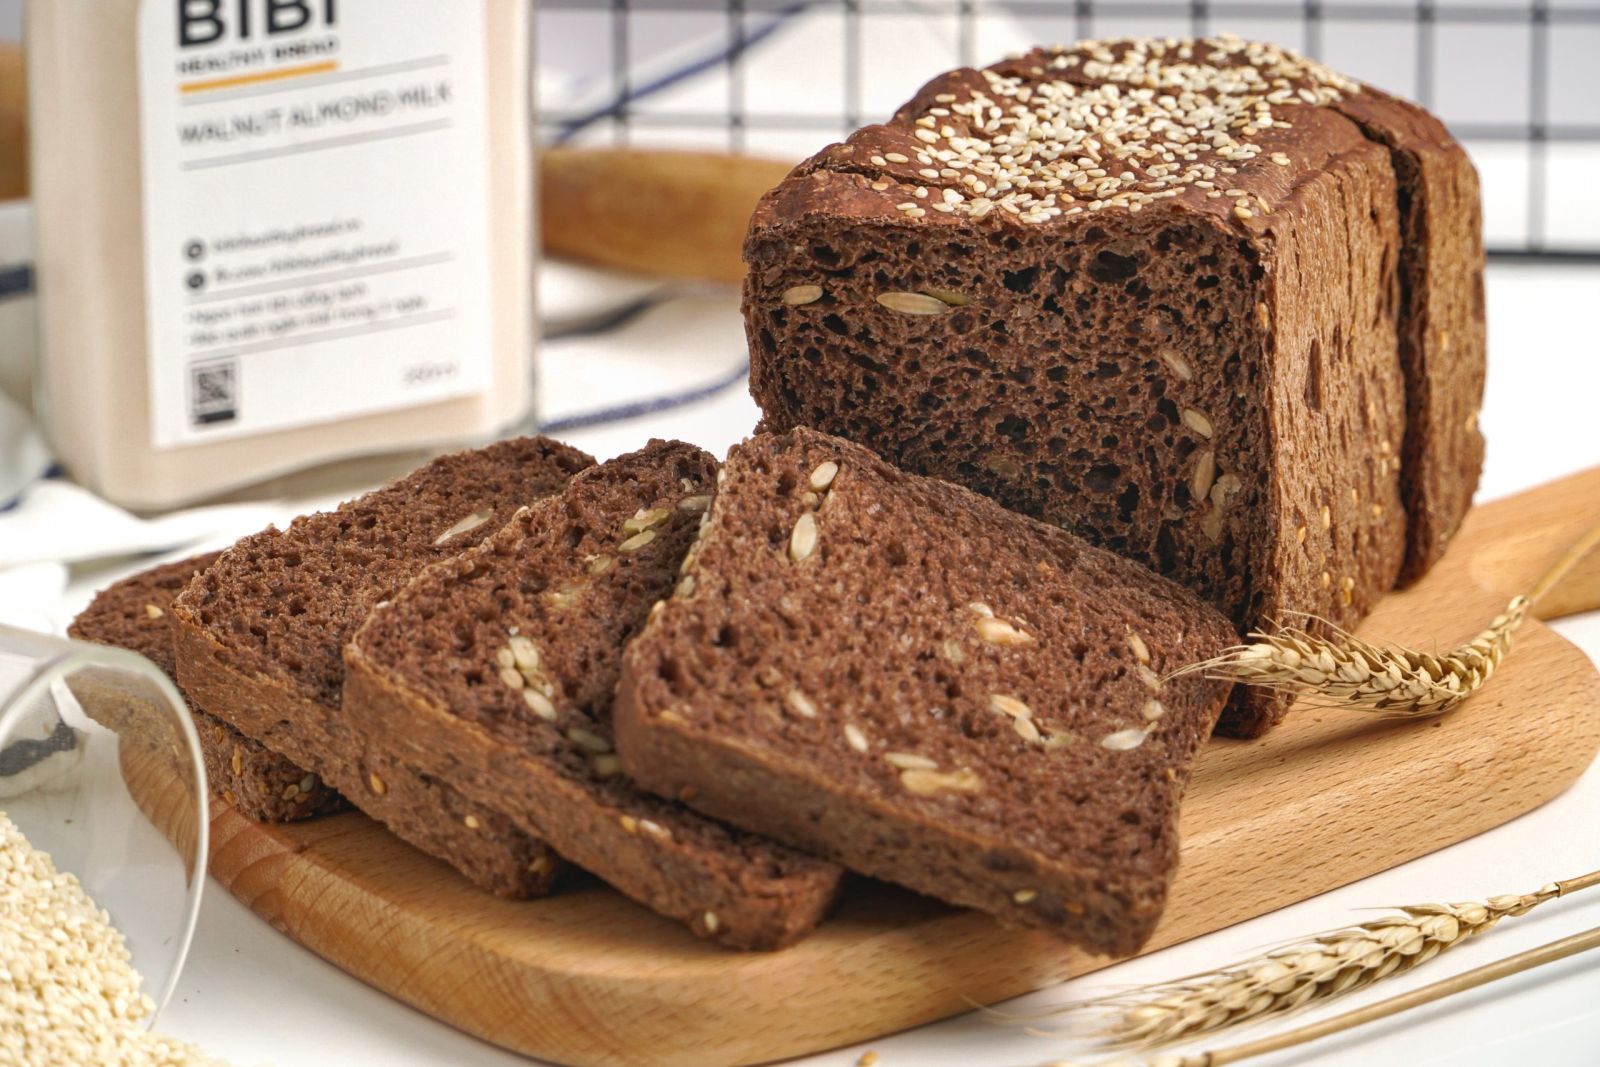 Bánh mì đen làm từ lúa mạch đen nên hoàn toàn không chứa tinh bột